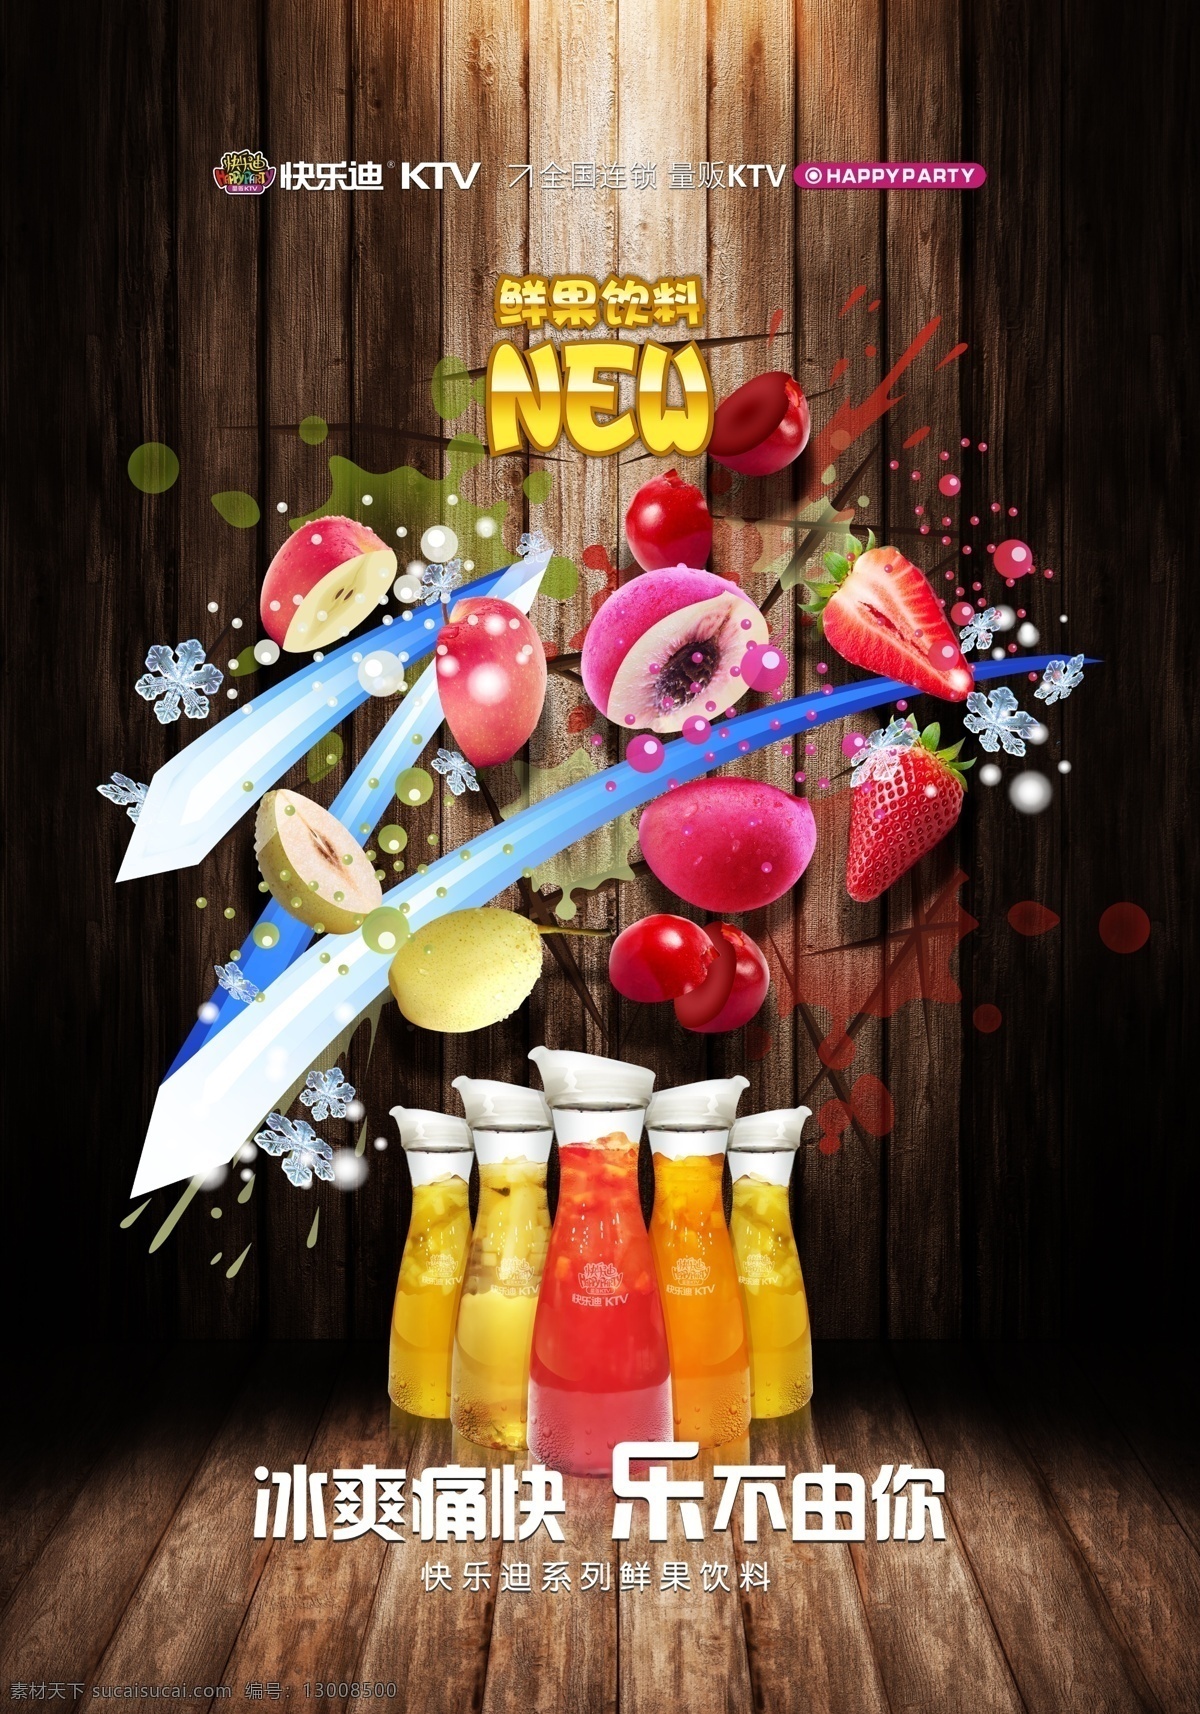 鲜果饮料海报 鲜果 饮料 海报 切水果 忍者 新品上市 切水果游戏 水果忍者游戏